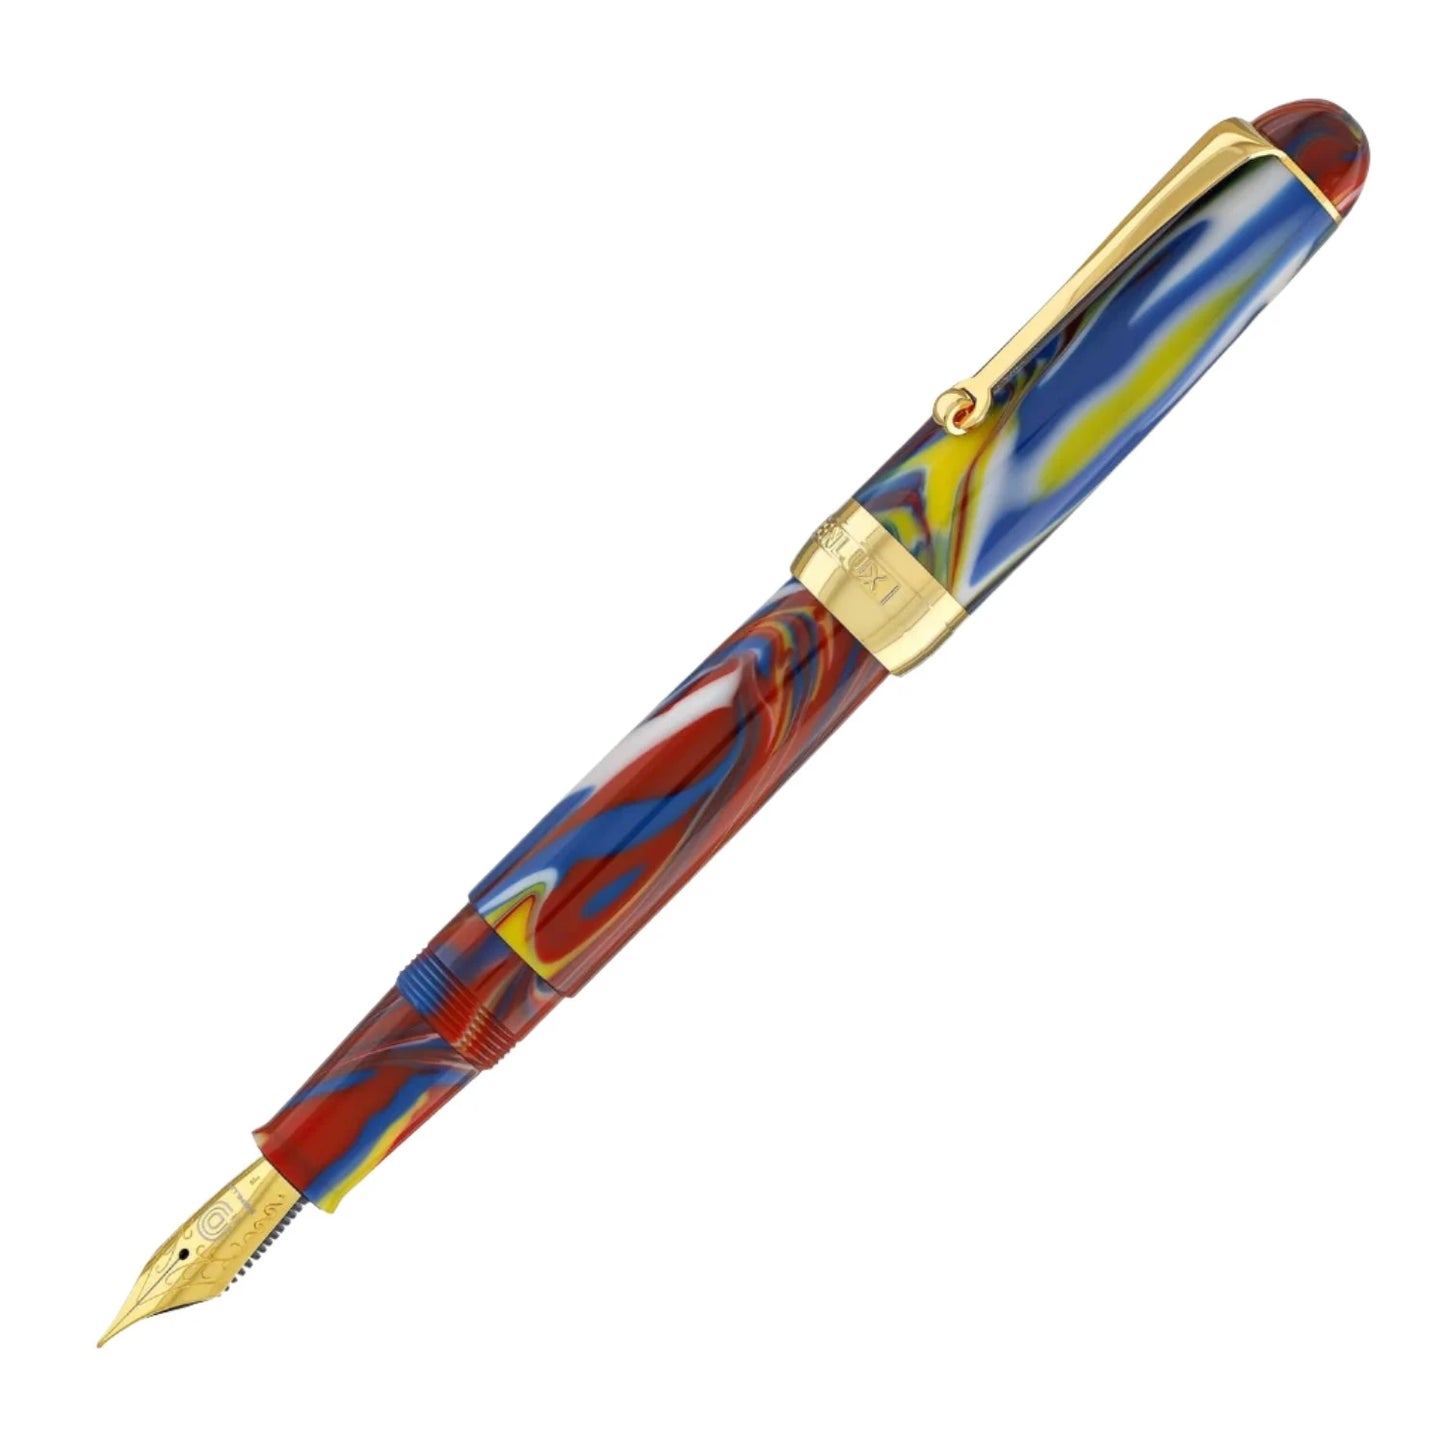 Penlux Masterpiece Delgado Fountain Pen - Macaw